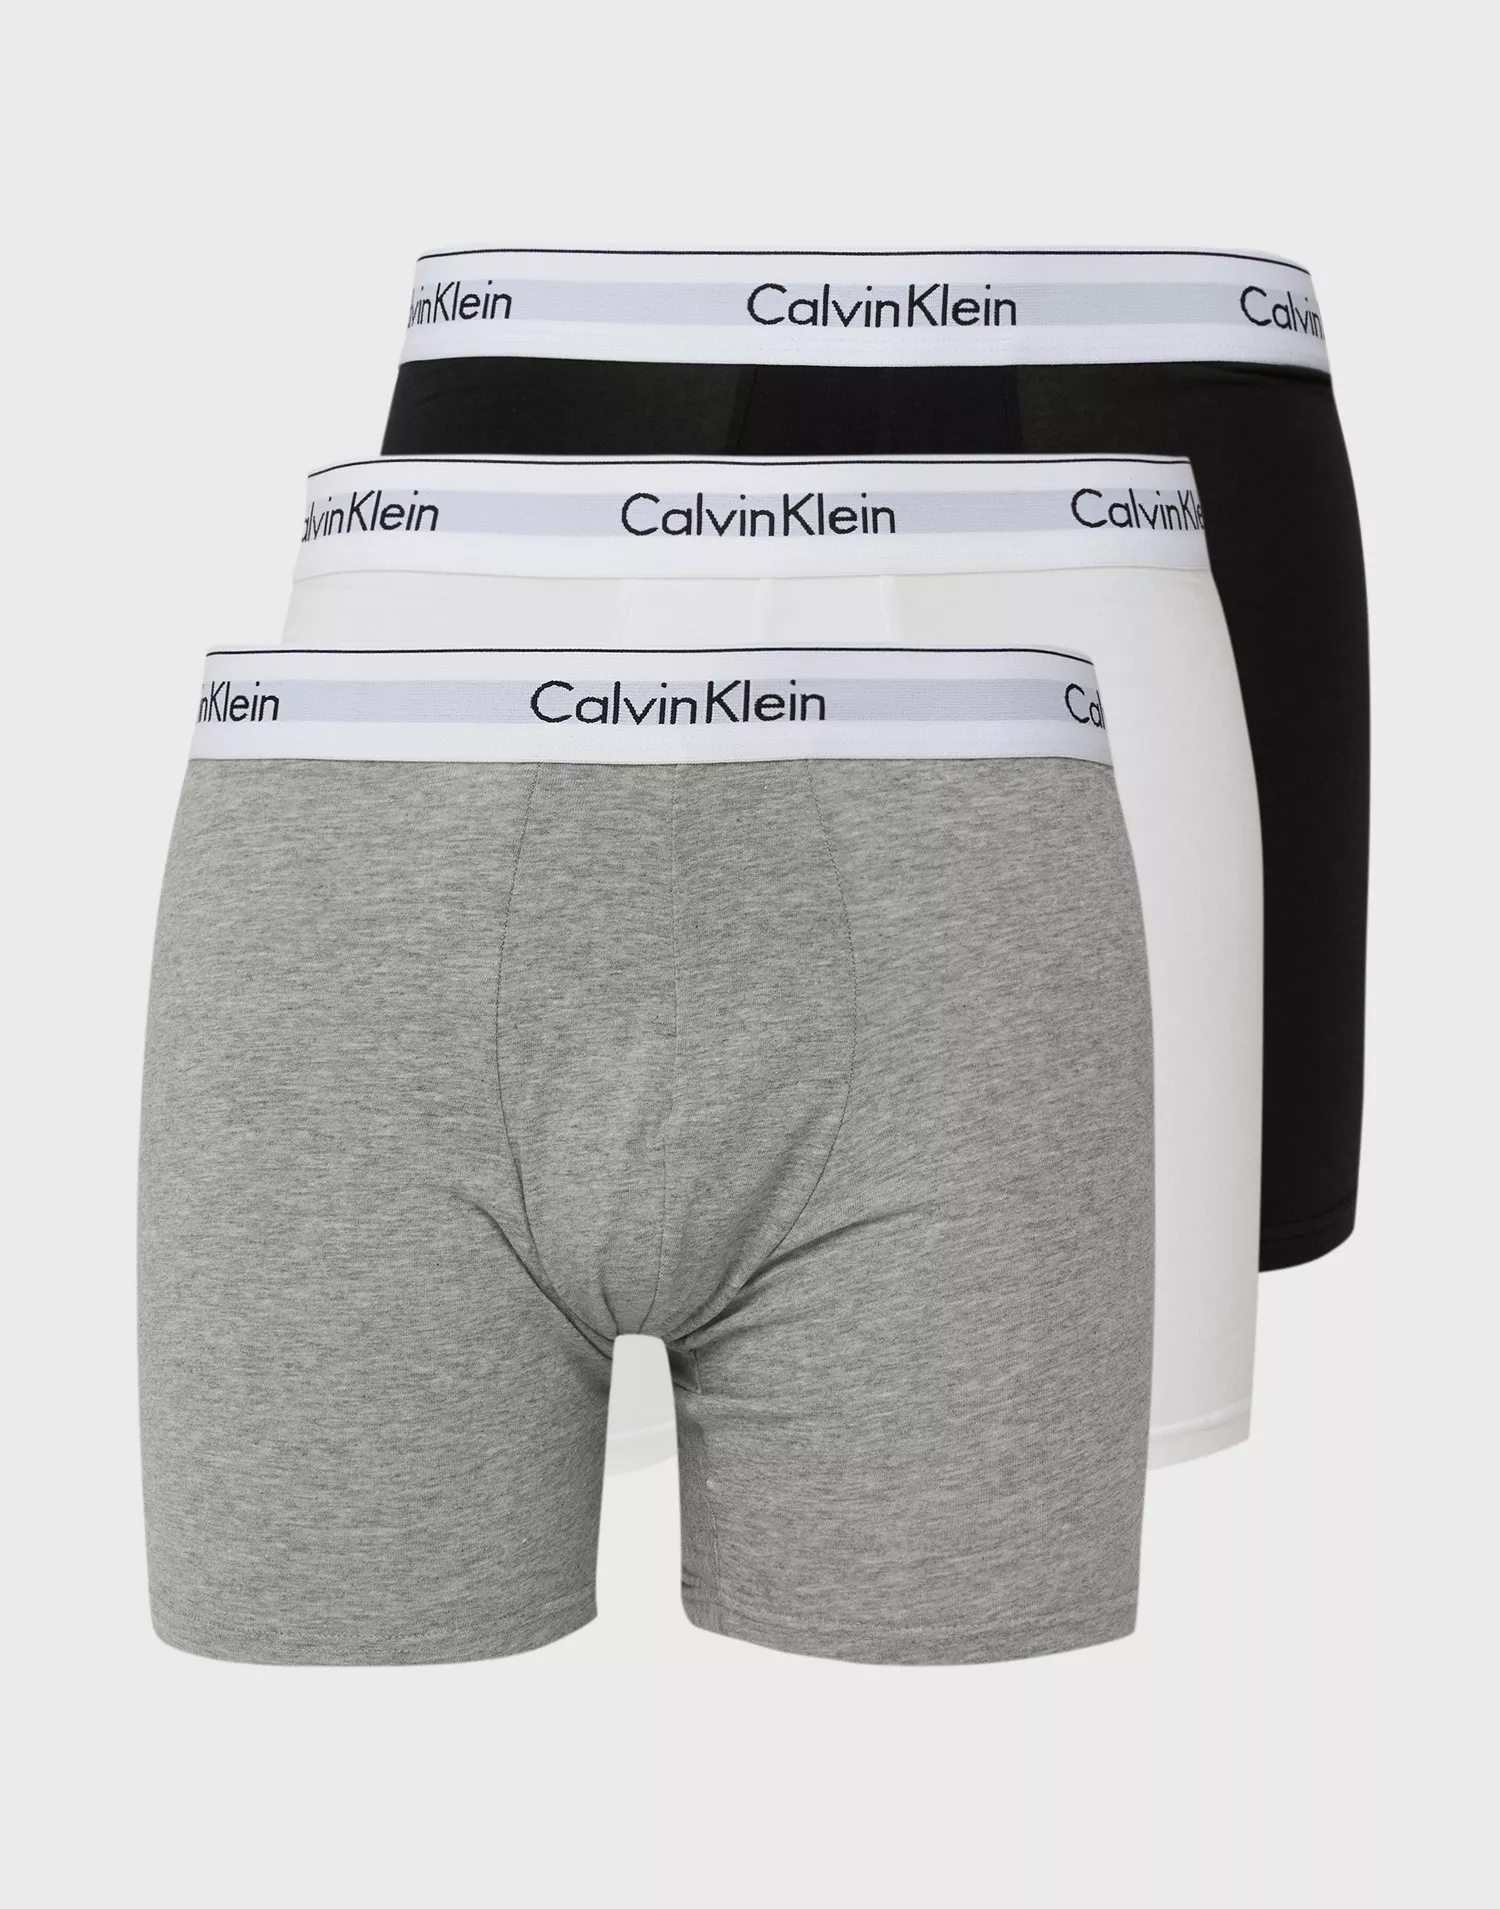 Buy Calvin Klein Underwear BOXER BRIEF 3PK - Black/White/Grey